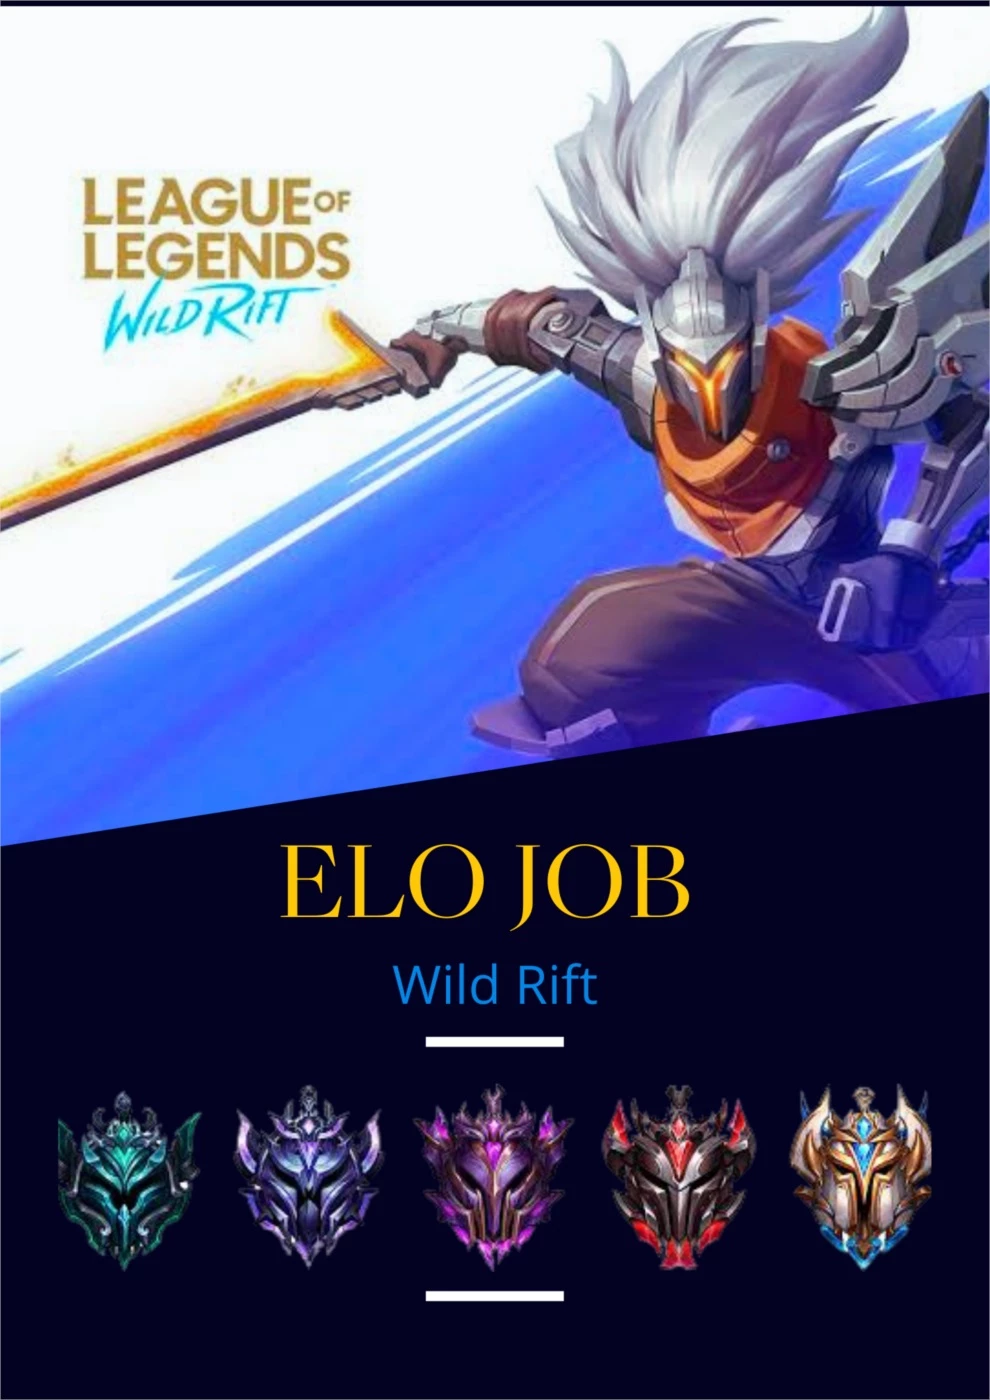 Elojob De League Of Legends: Wild Rift Lol Wr - DFG